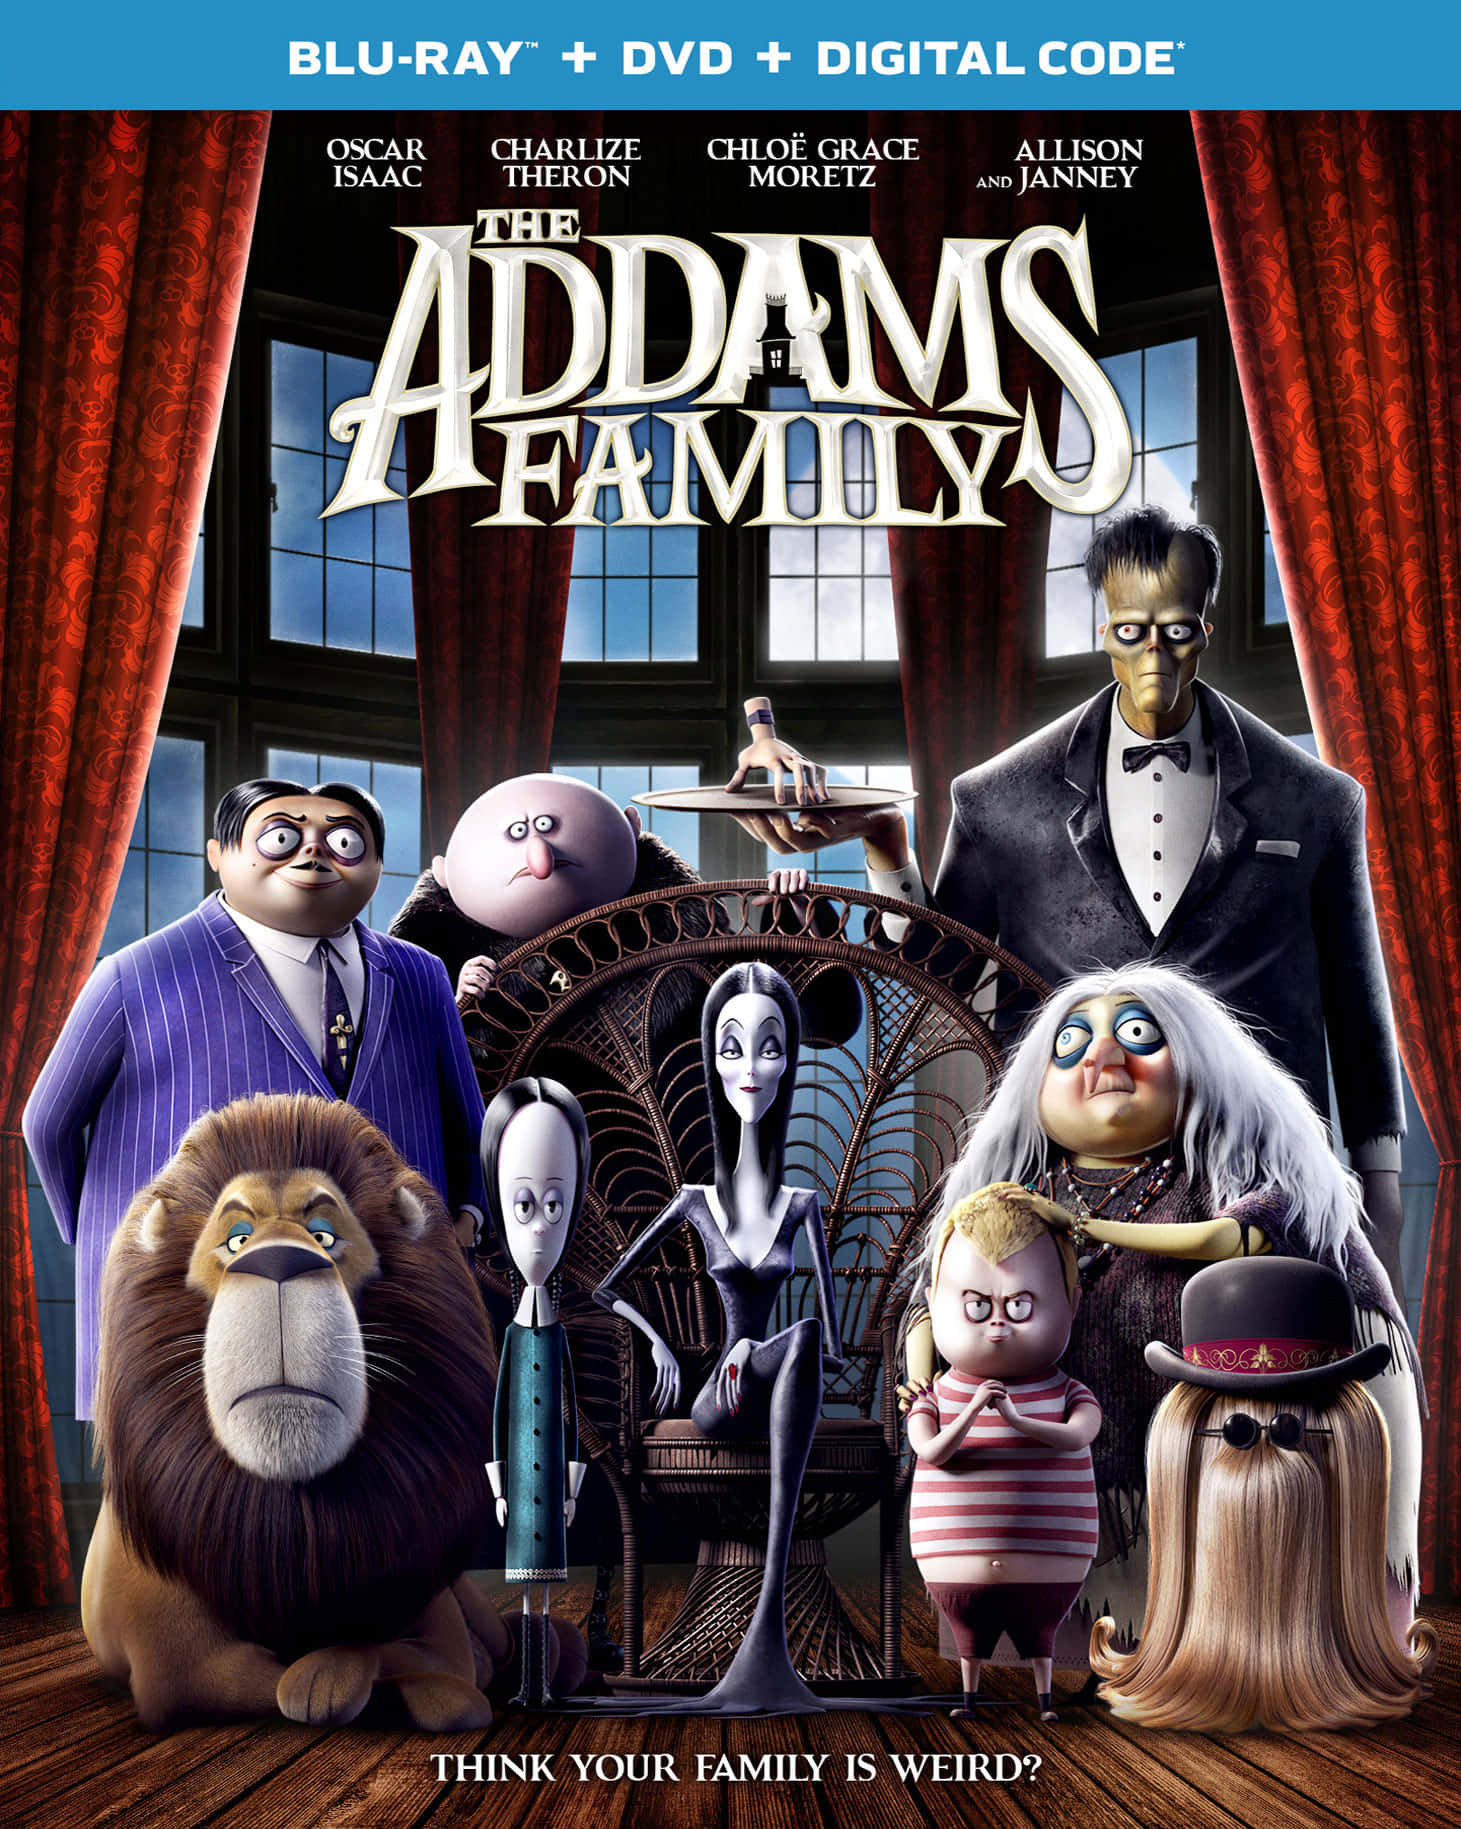 The creepy and kooky Addams Family!